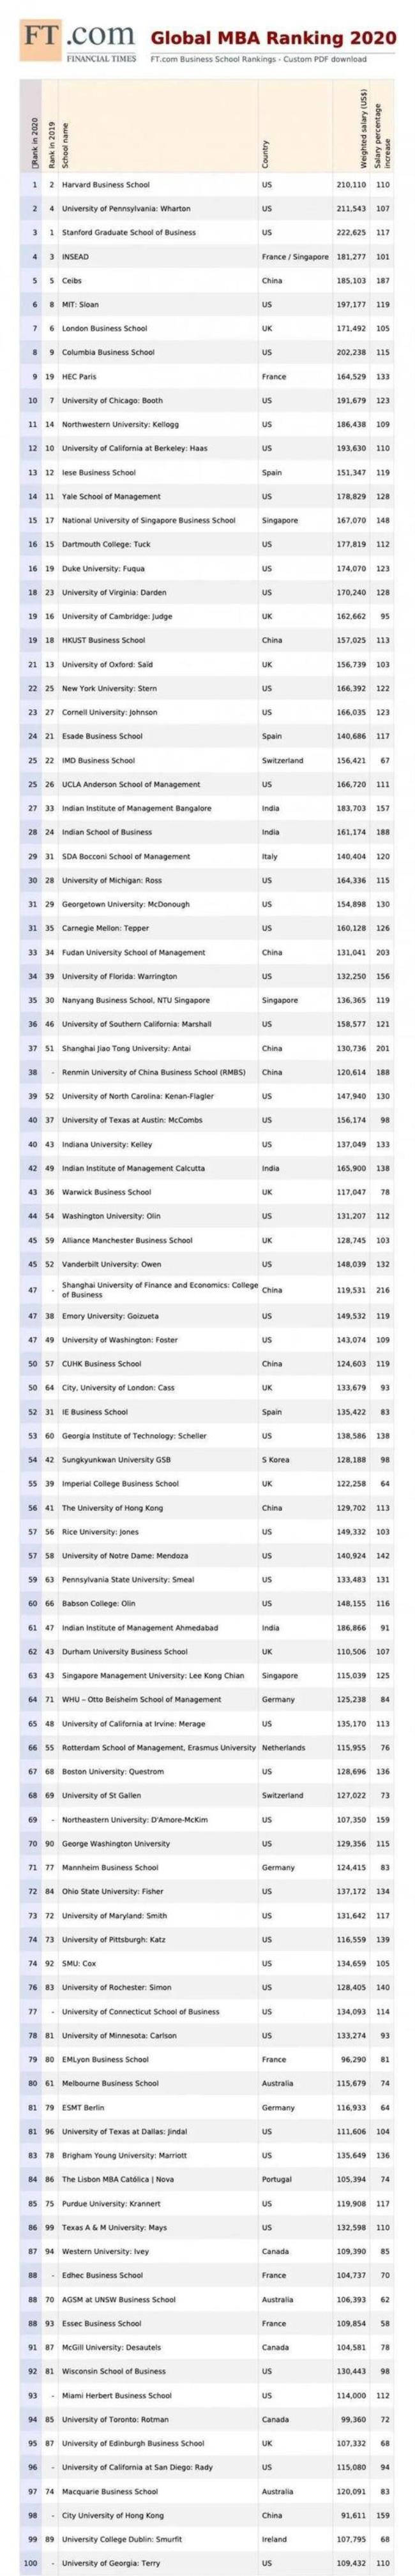 世界大学排名(排名第一的是麻省理工学院)